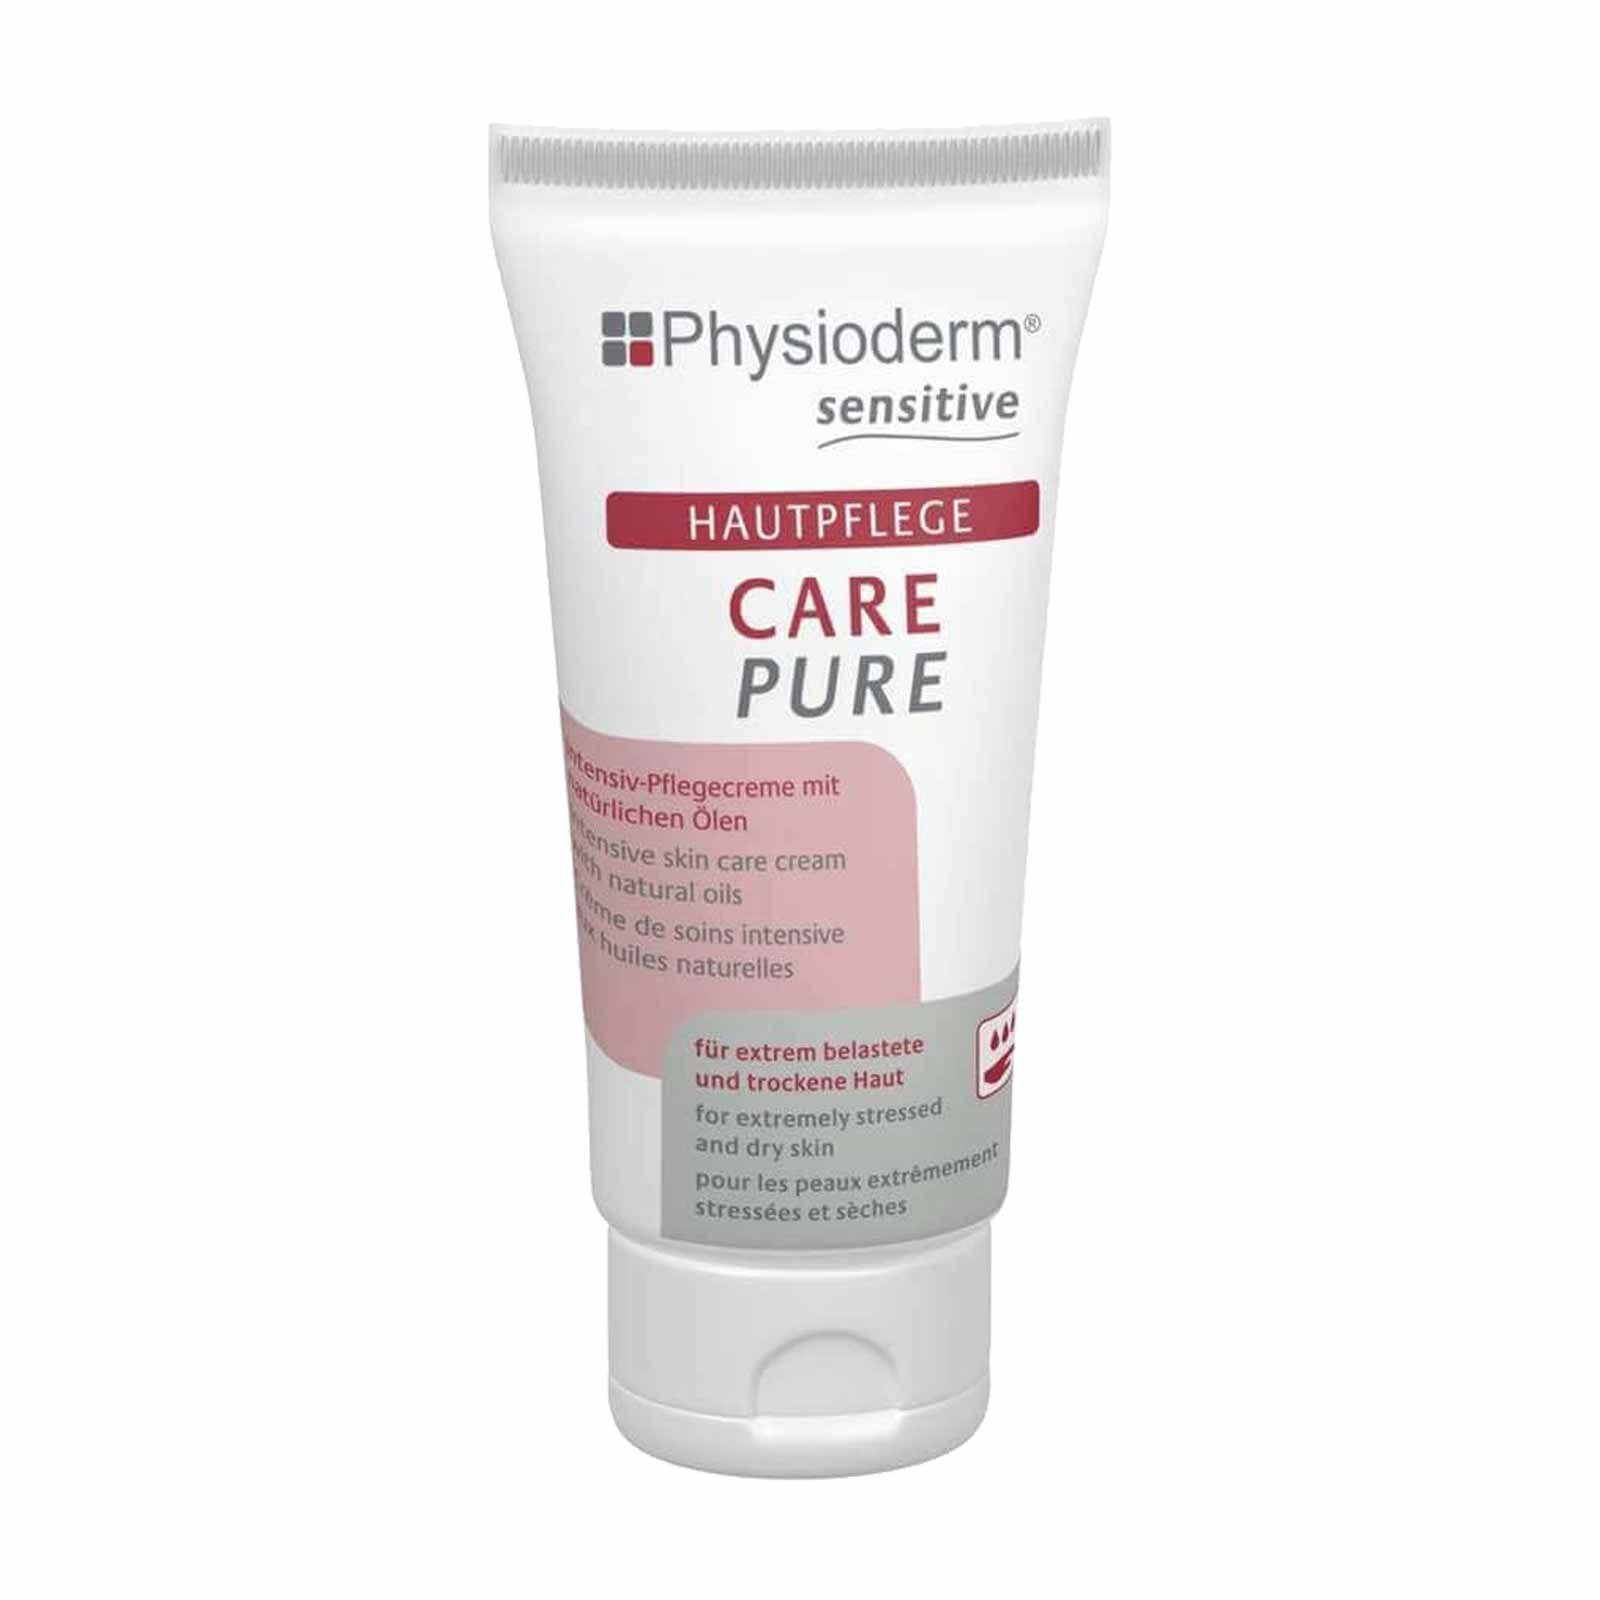 Physioderm Körperpflegemittel Hautpflegecreme CARE PURE 50ml, Pflegecreme Handpflege Gesichtspflege